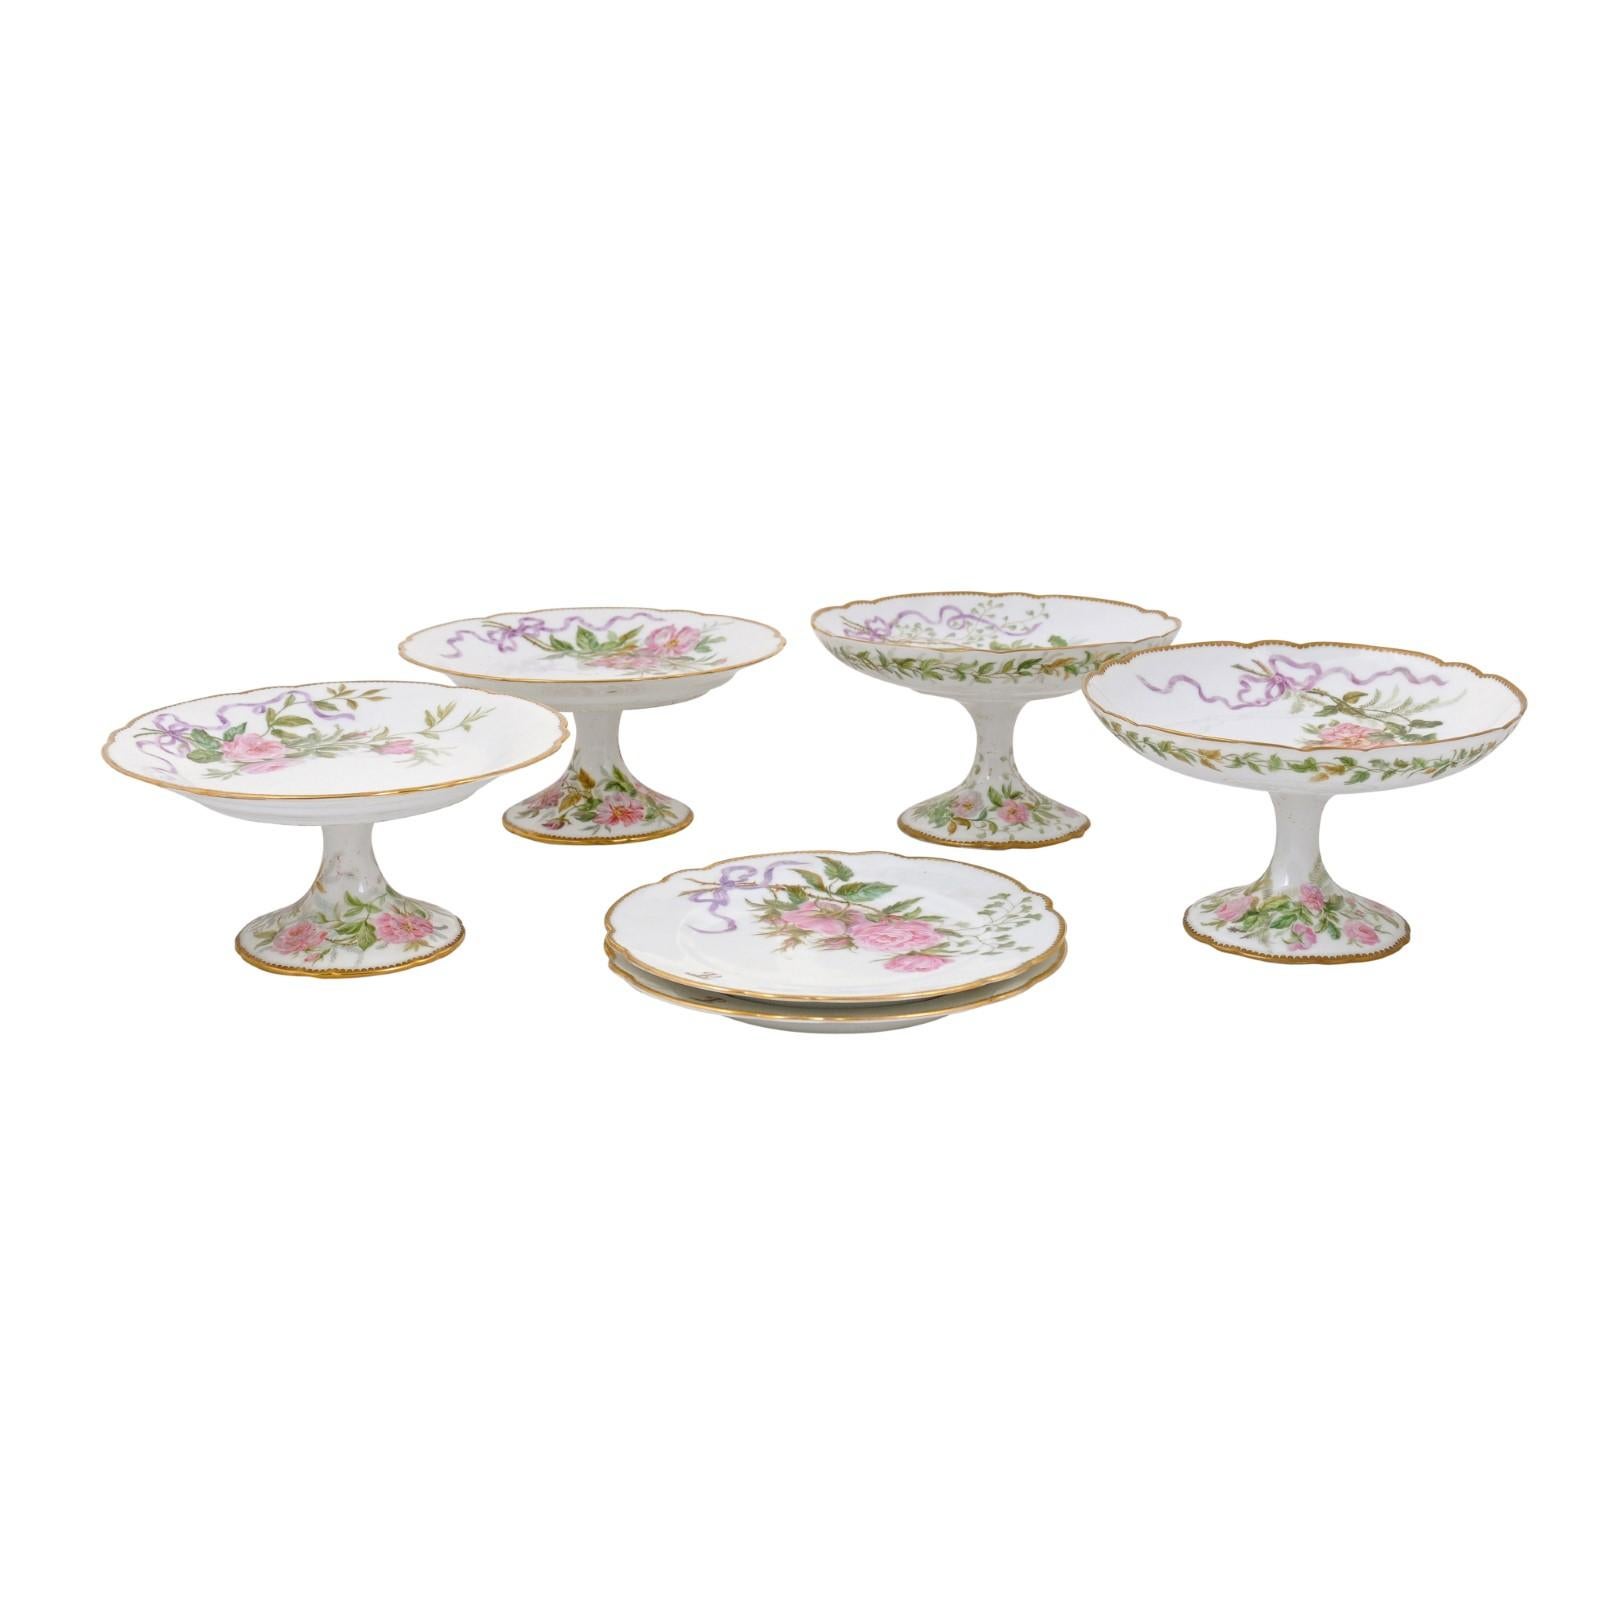 Englische Kompottschalen und Teller aus englischem Porzellan mit Blumendekor und vergoldetem Rand